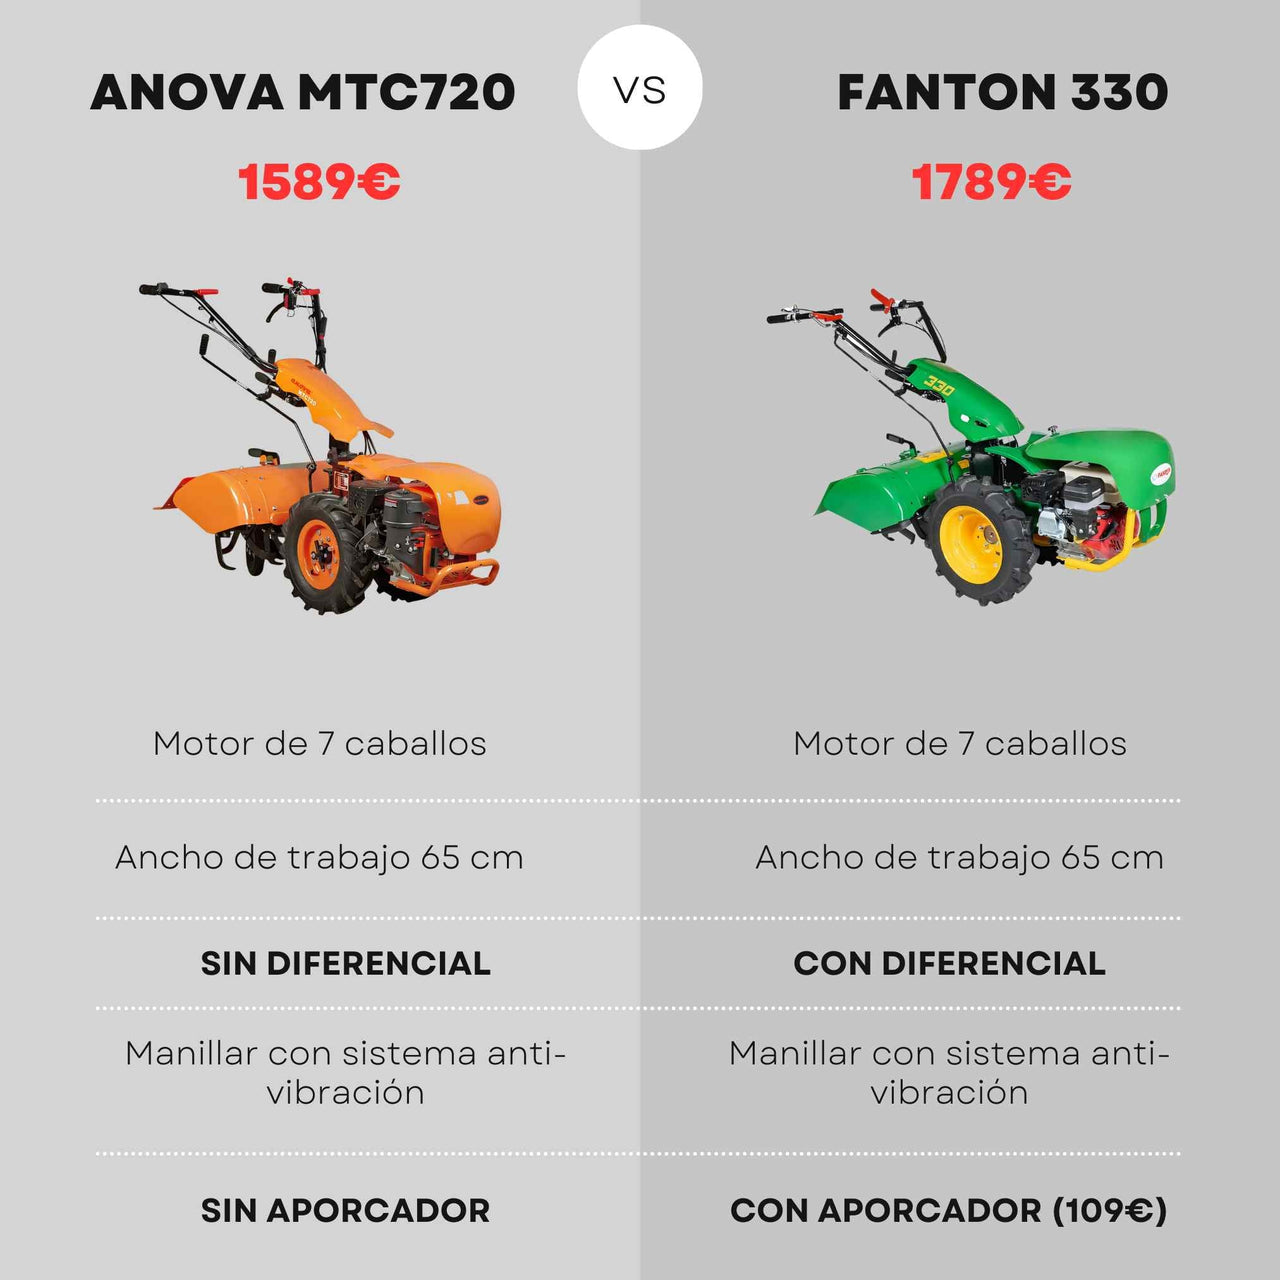 Motocultor FANTON ACE330 con DIFERENCIAL (Arado y Fresas) - Talleres Castor